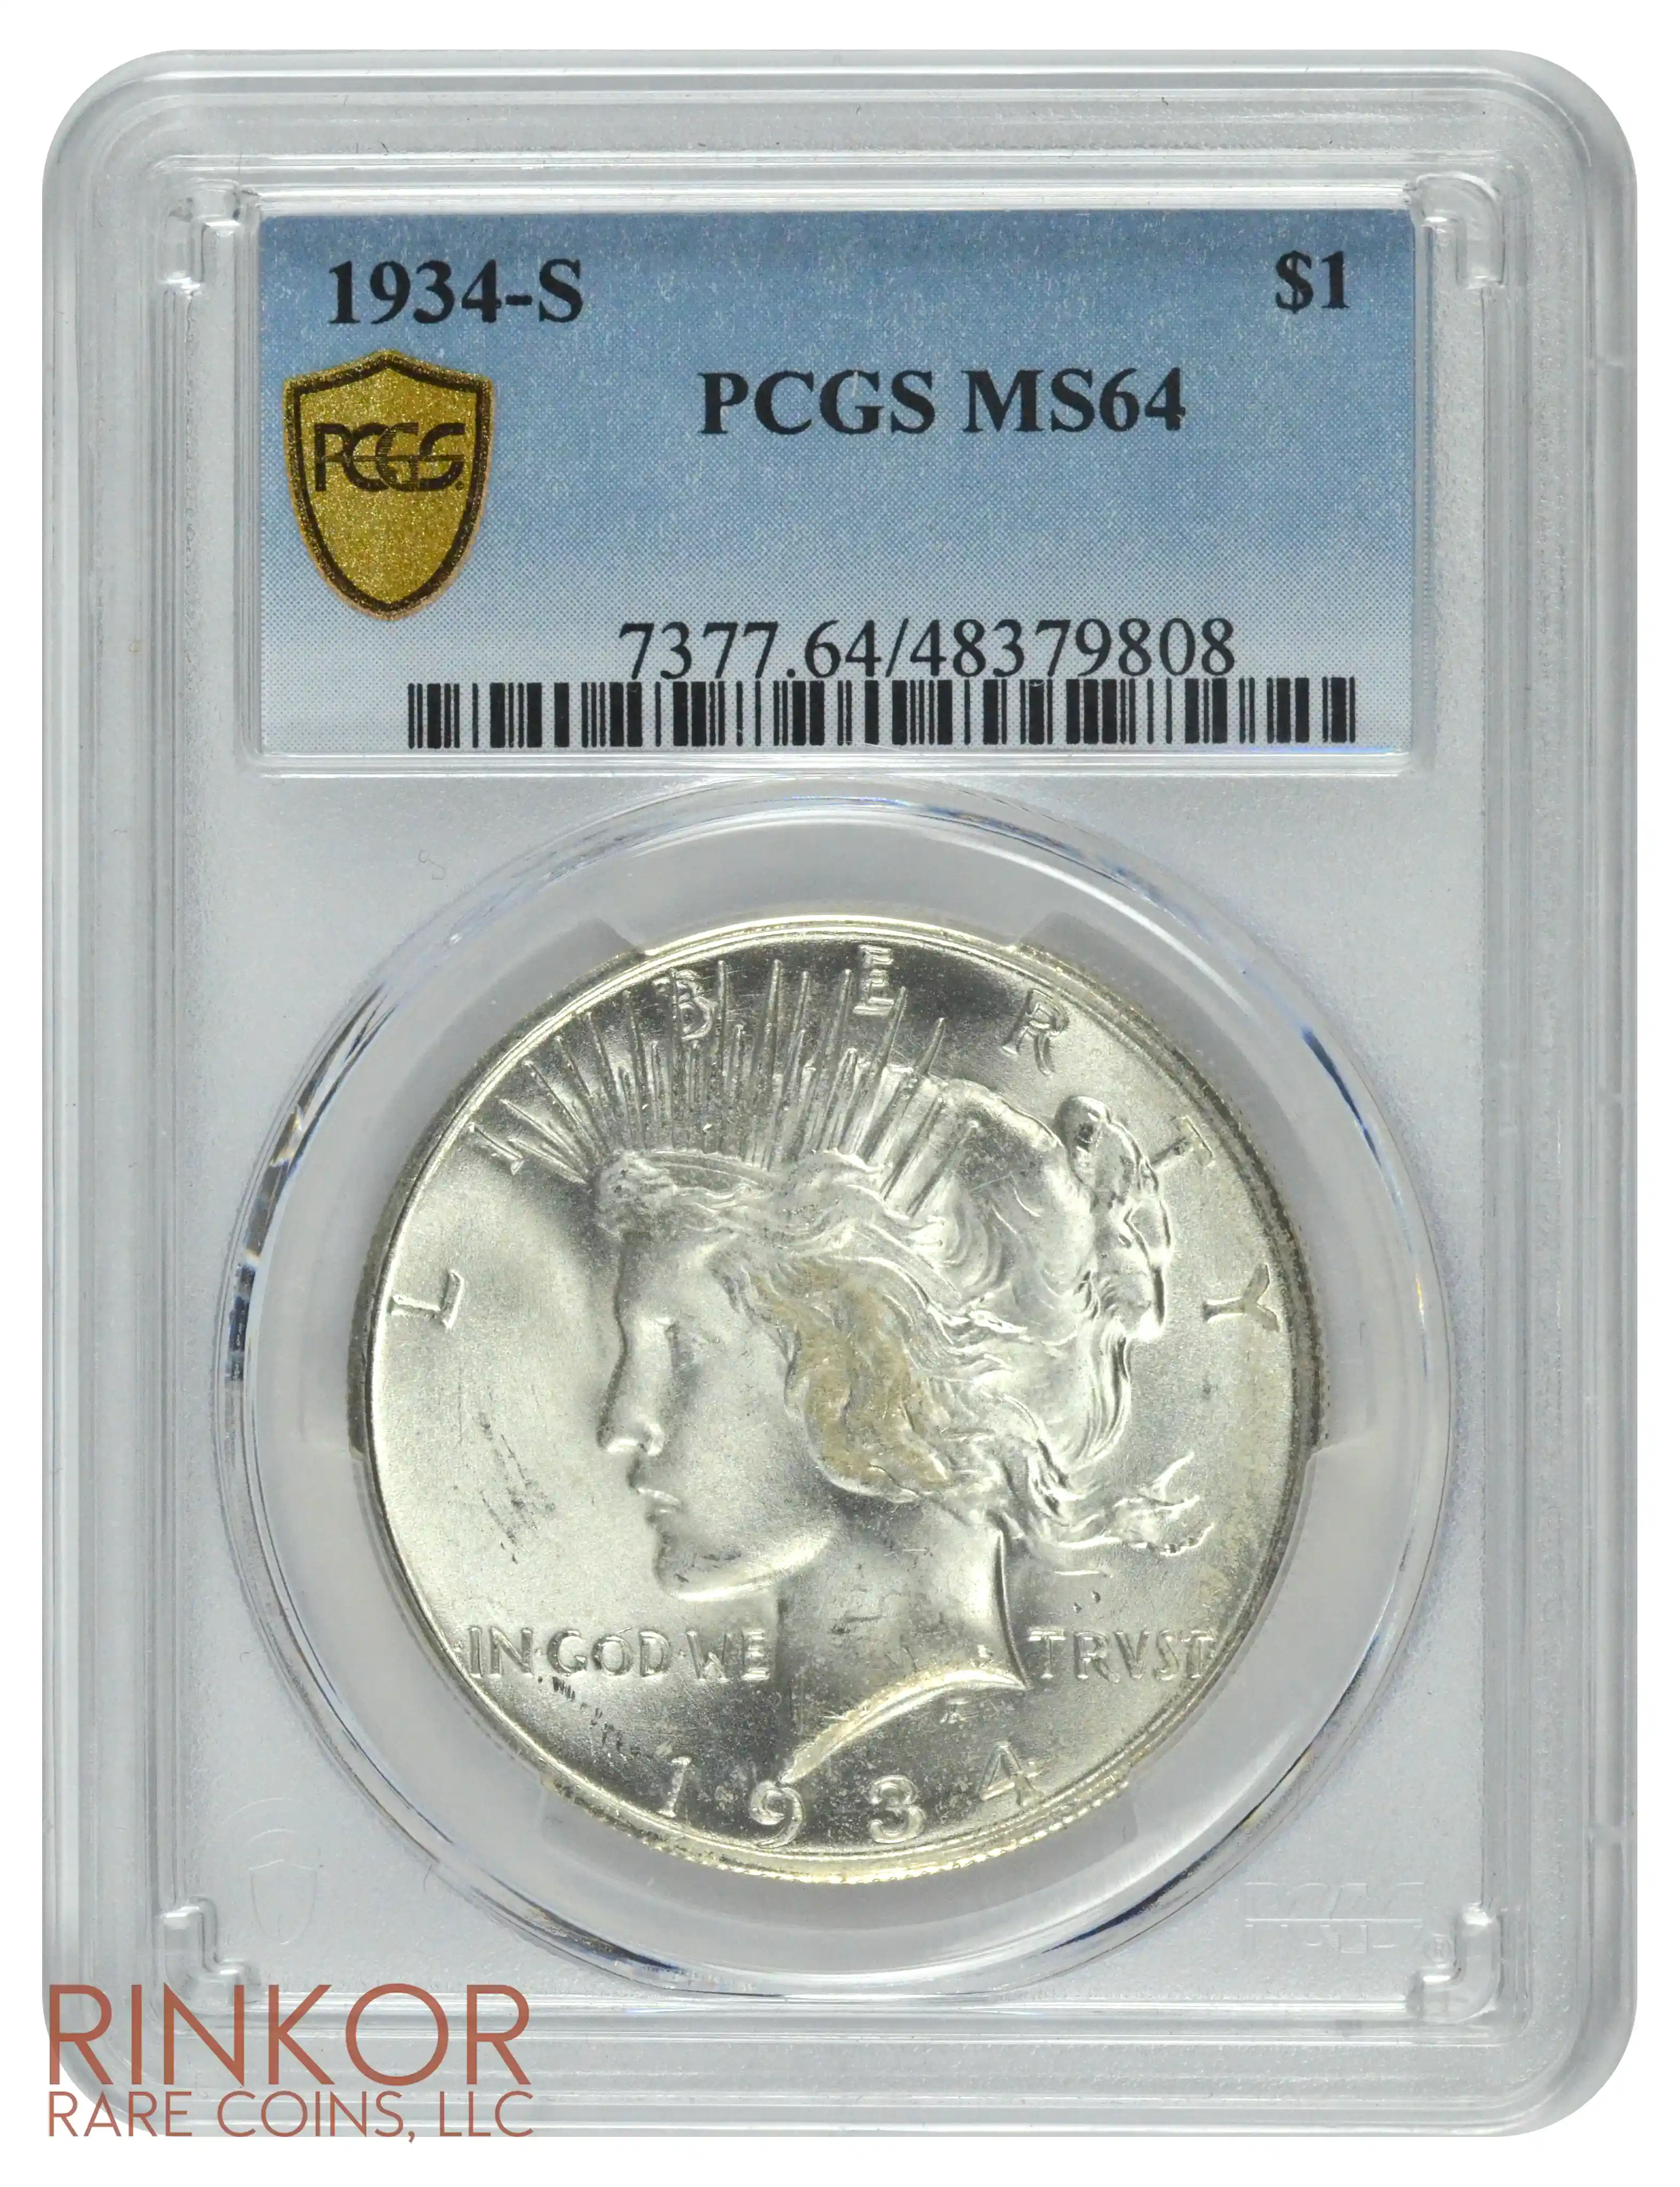 1934-S $1 PCGS MS 64